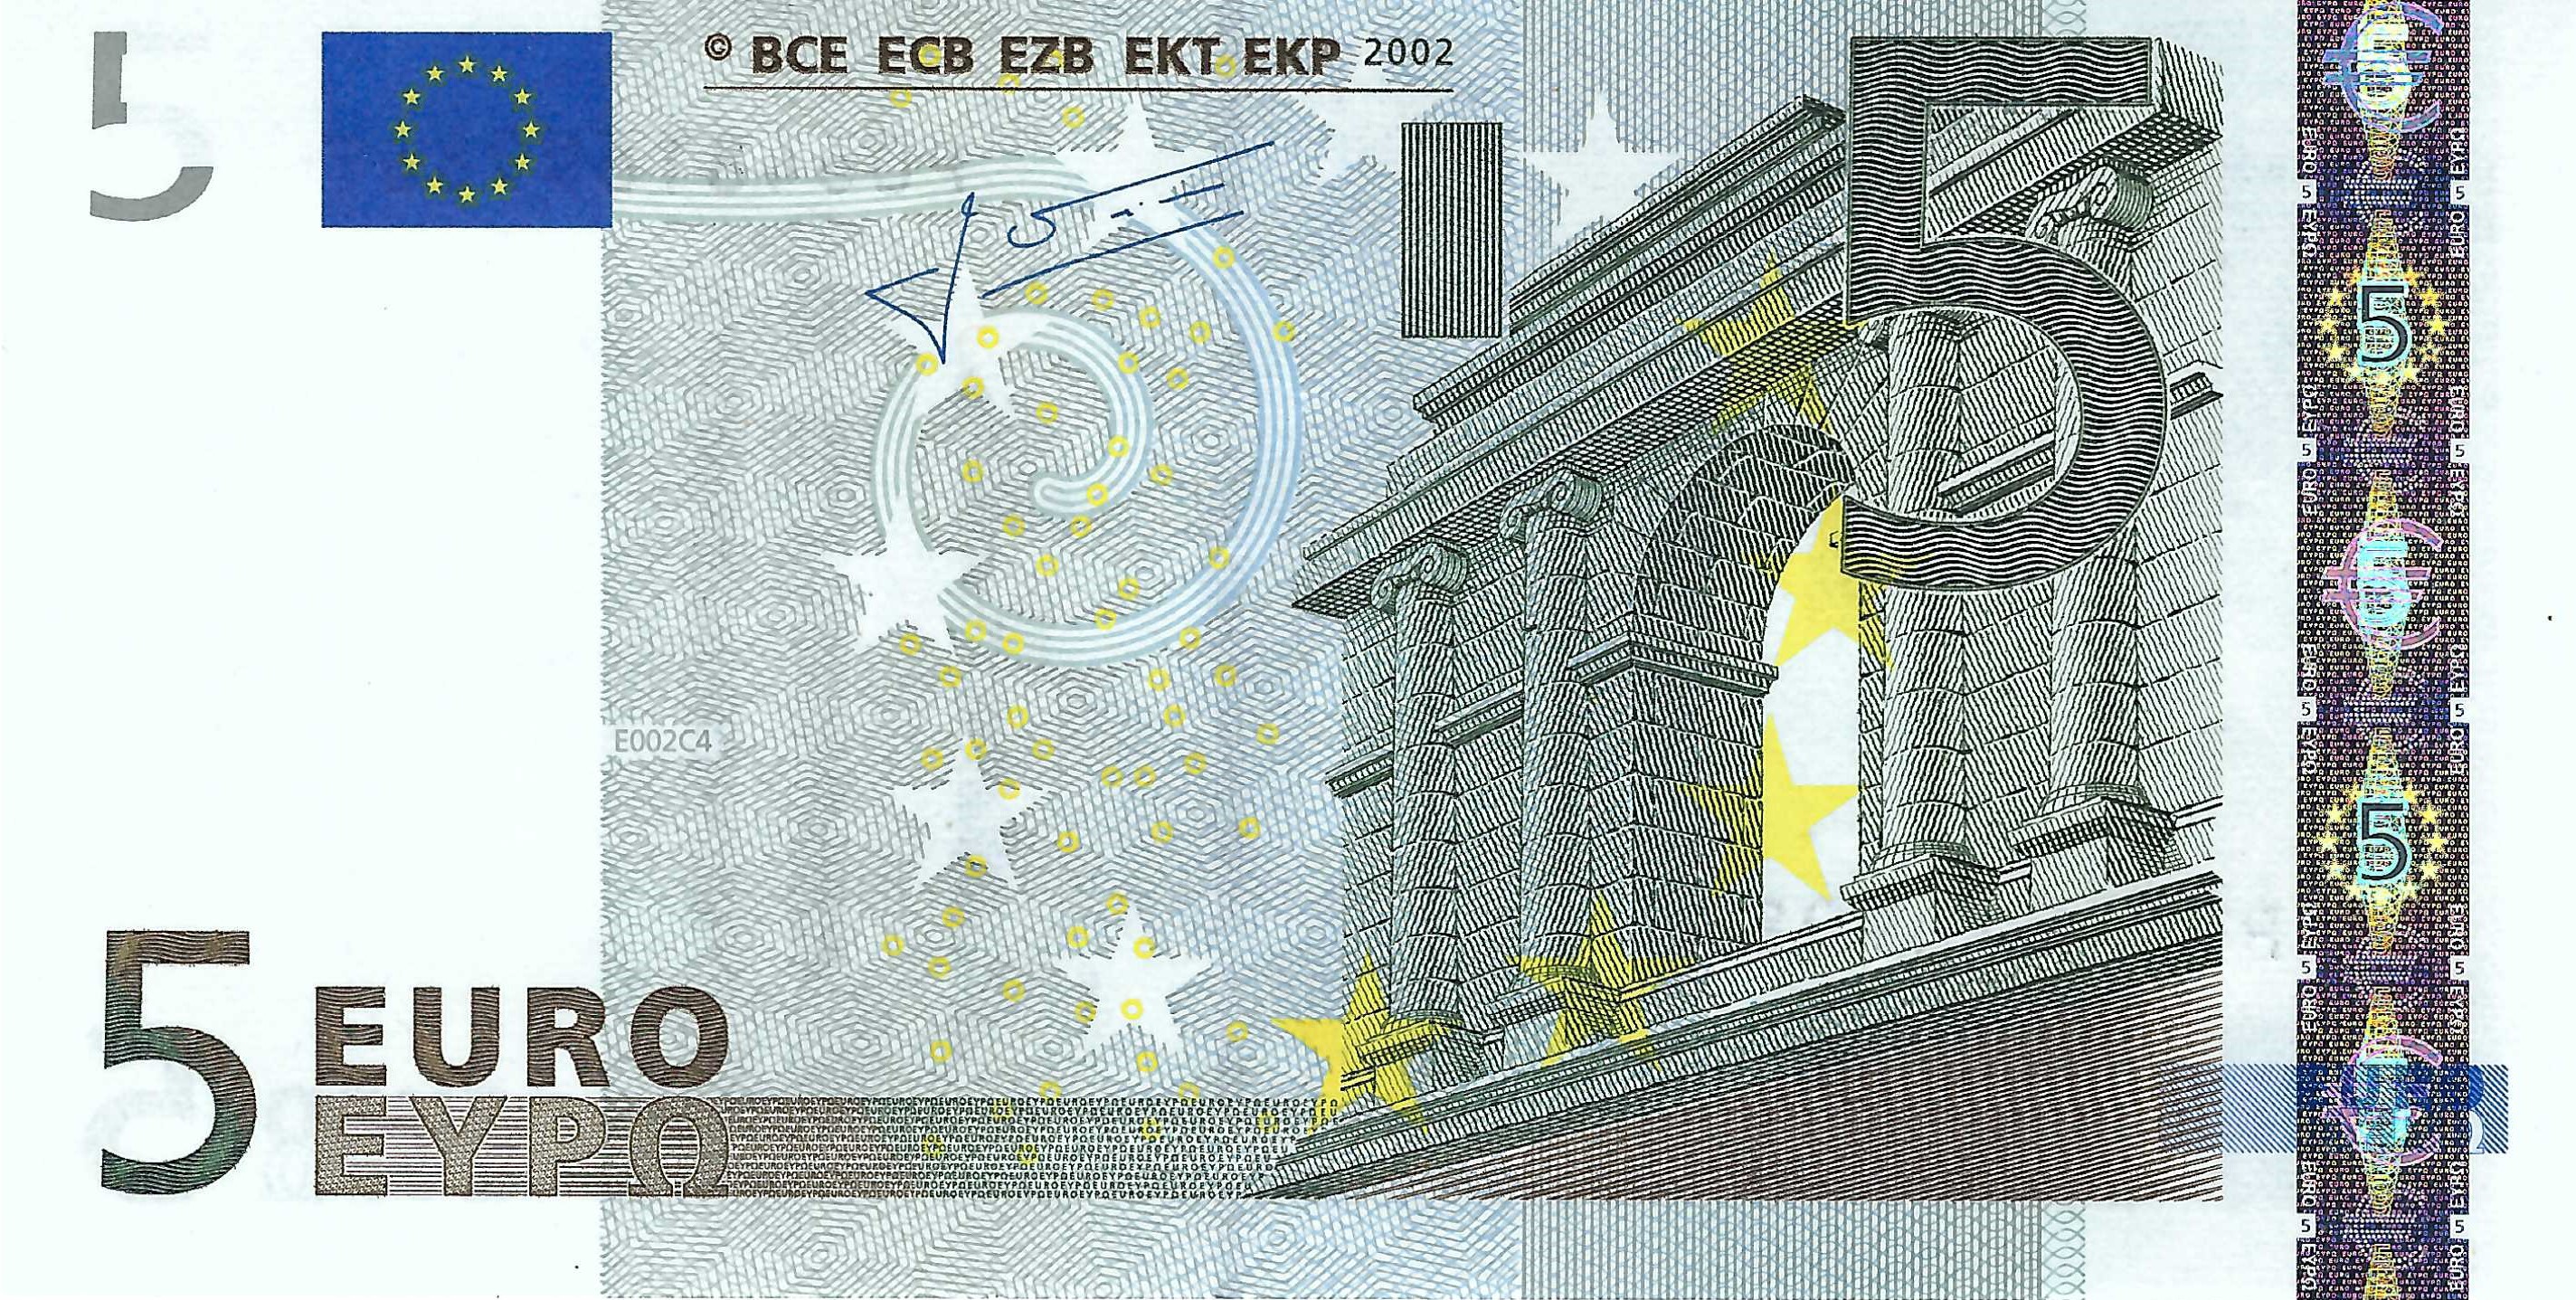 5 Euro biljet 2002 met handtekening J.-C. Trichet